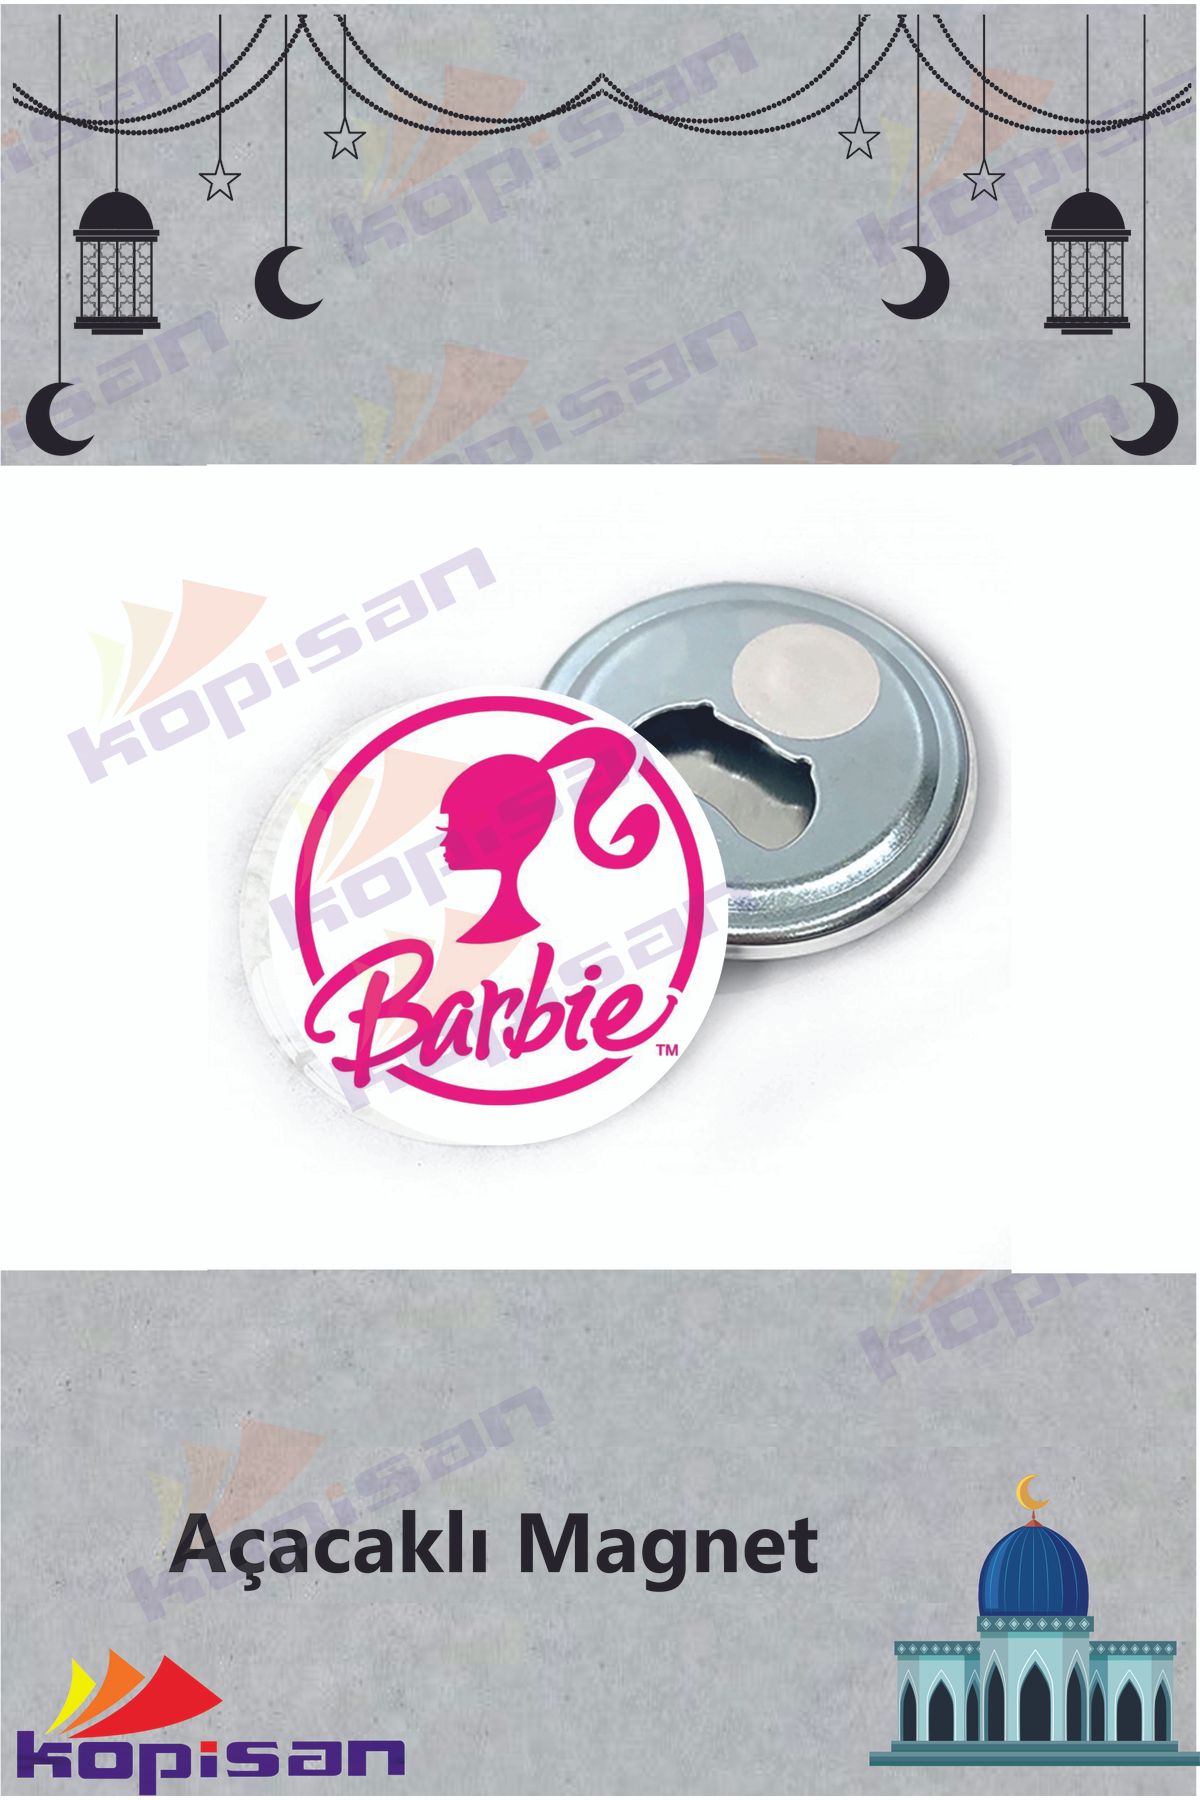 Kopisan 10 Adet Barbie Pembe Pink Barbie Ken Temalı Açacaklı Buzdolabı Magneti Hediyelik Doğum Günü Parti